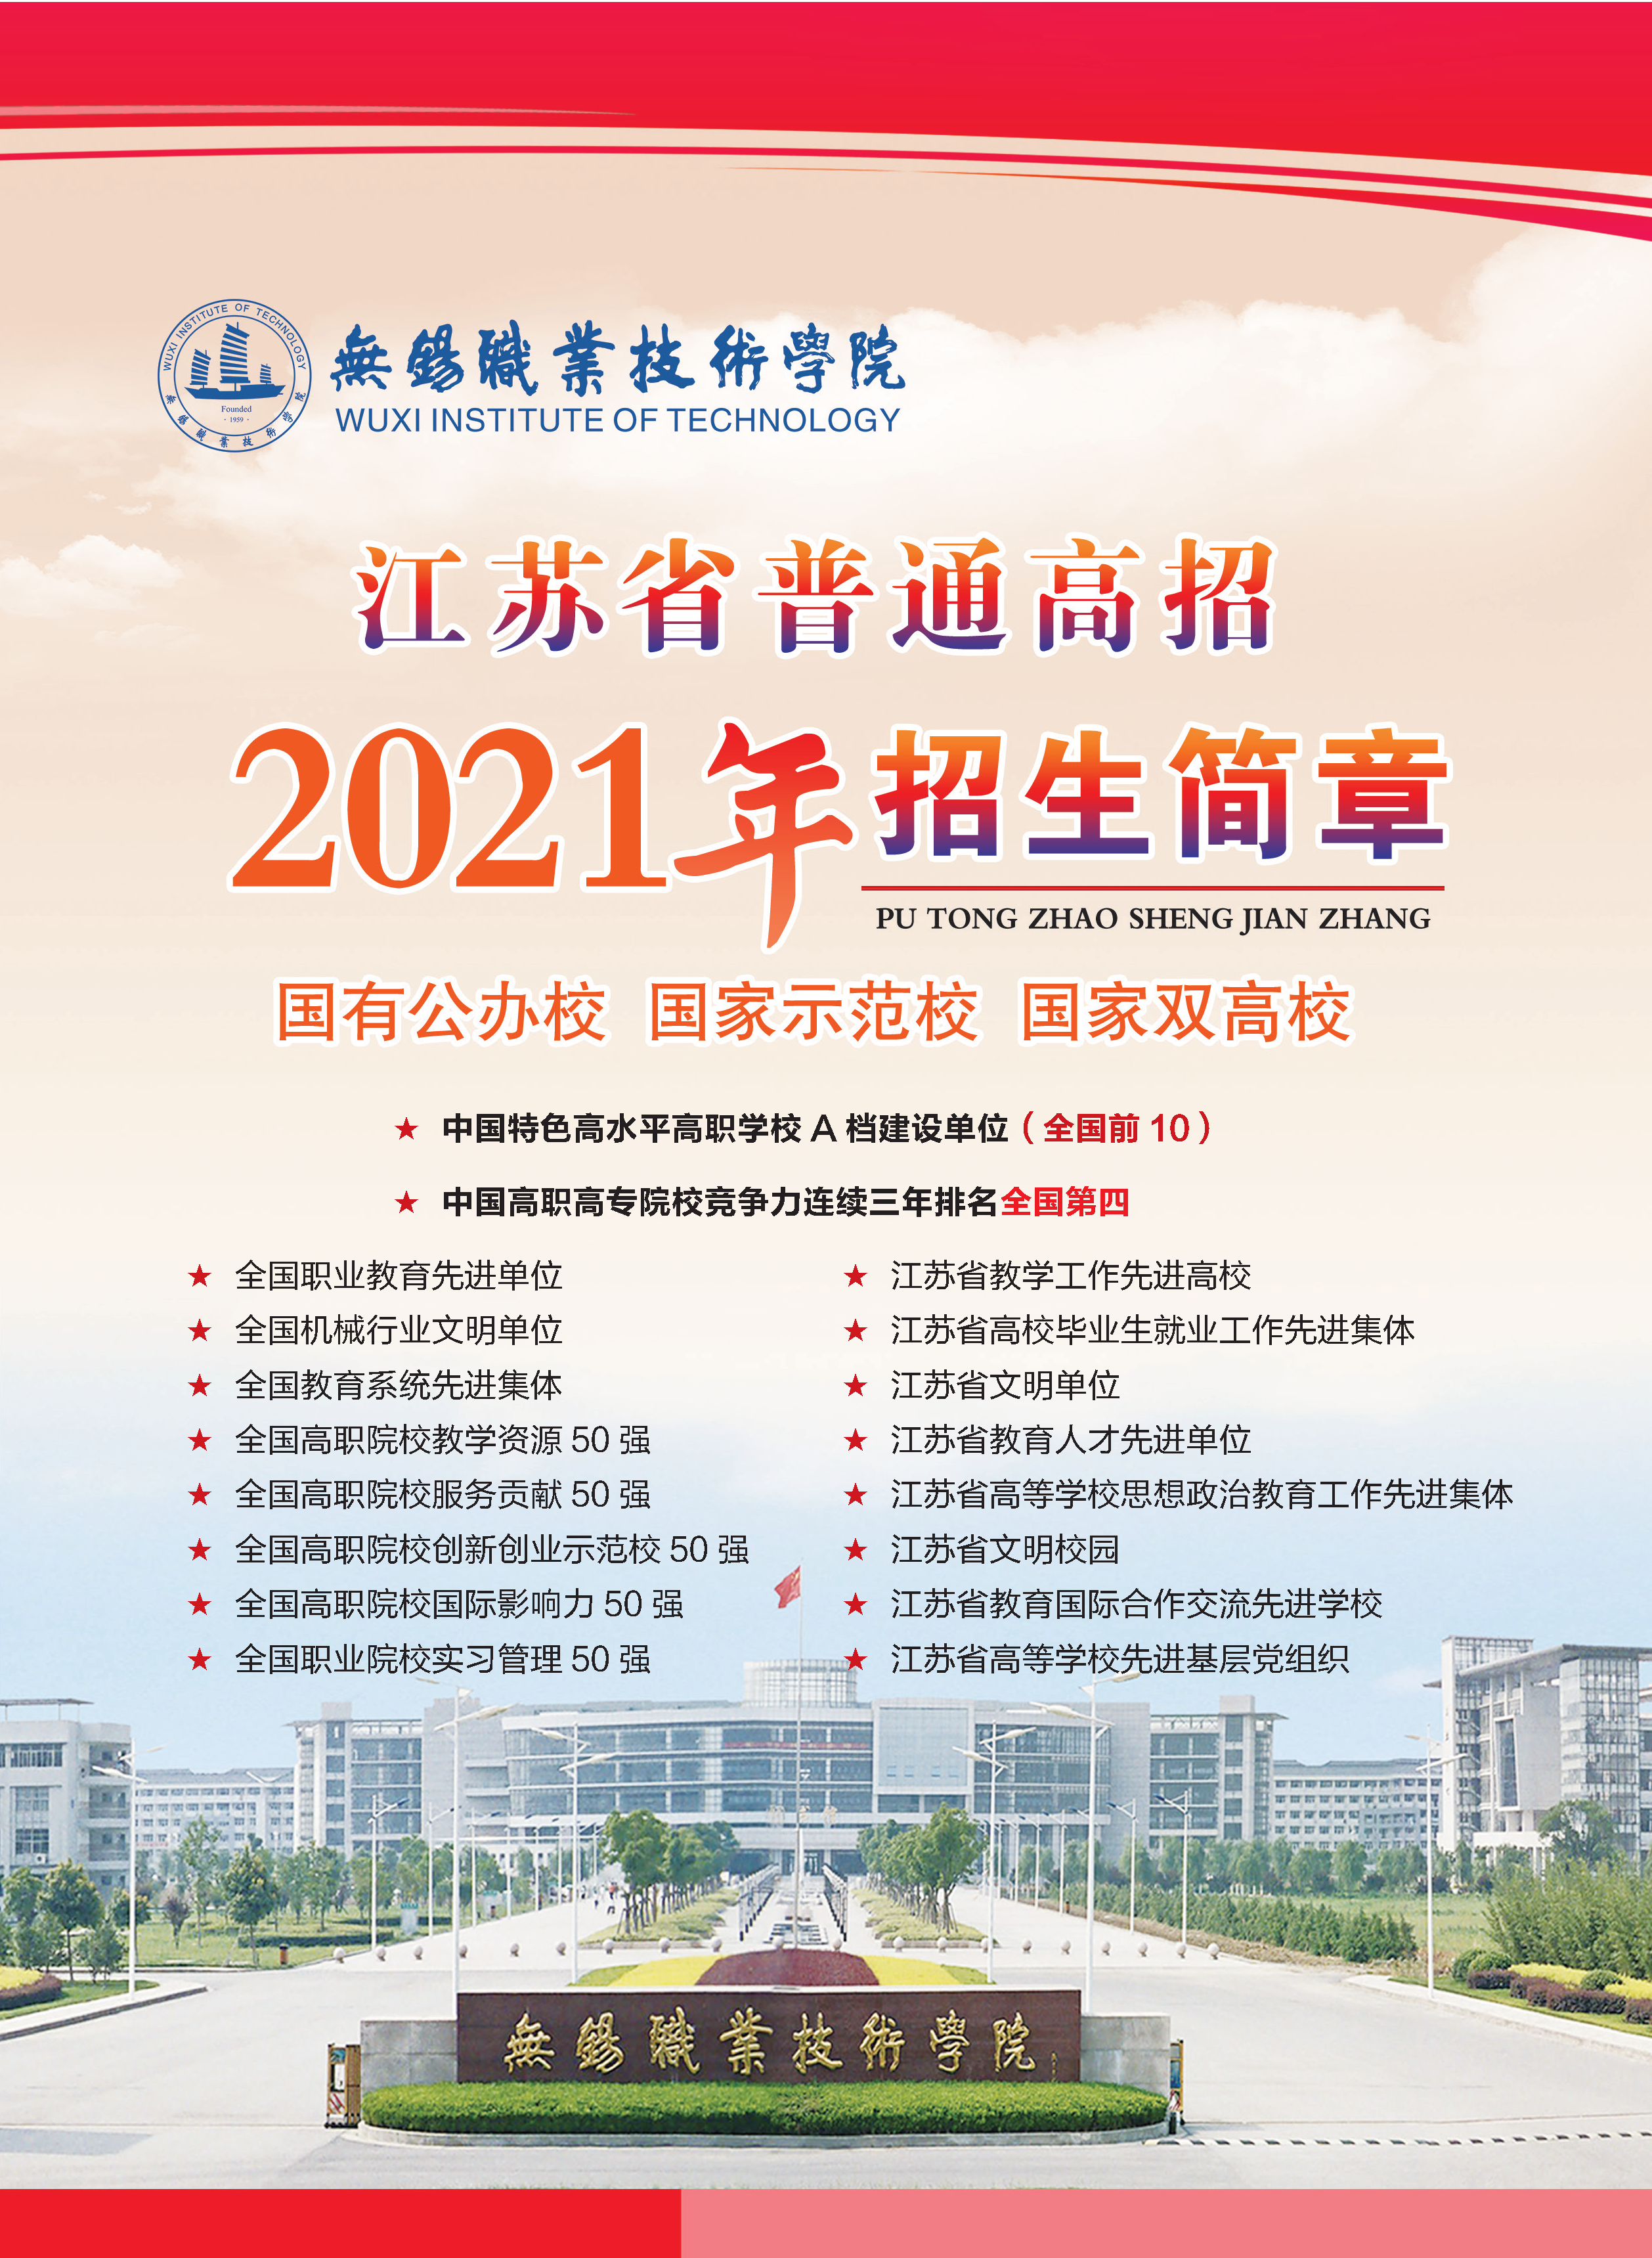 无锡职业技术学院江苏省普通高招2021年招生简章